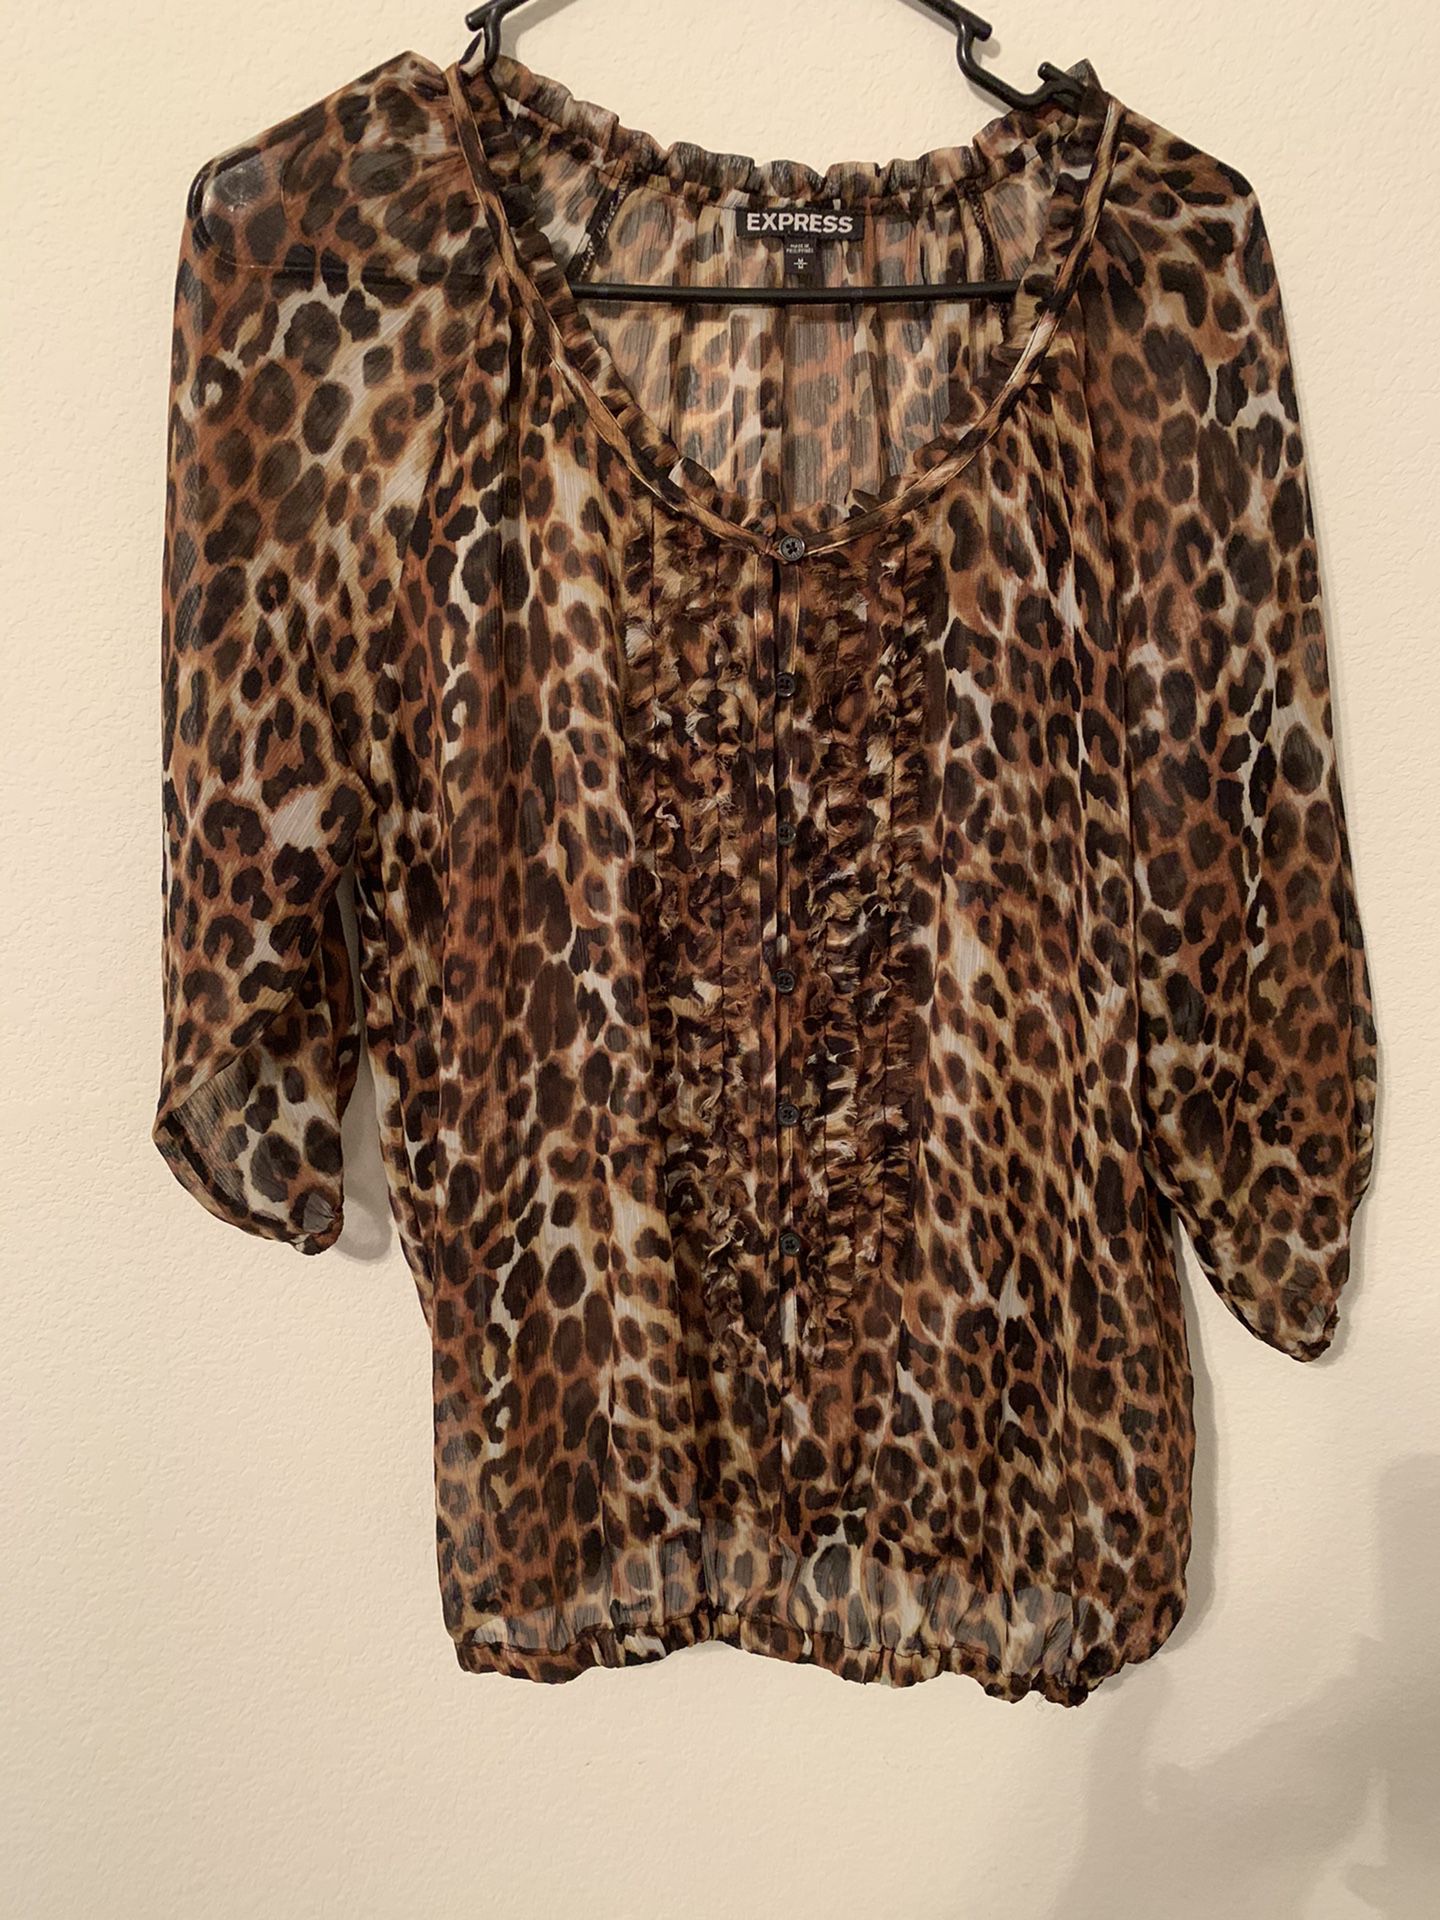 Express leopard print shirt